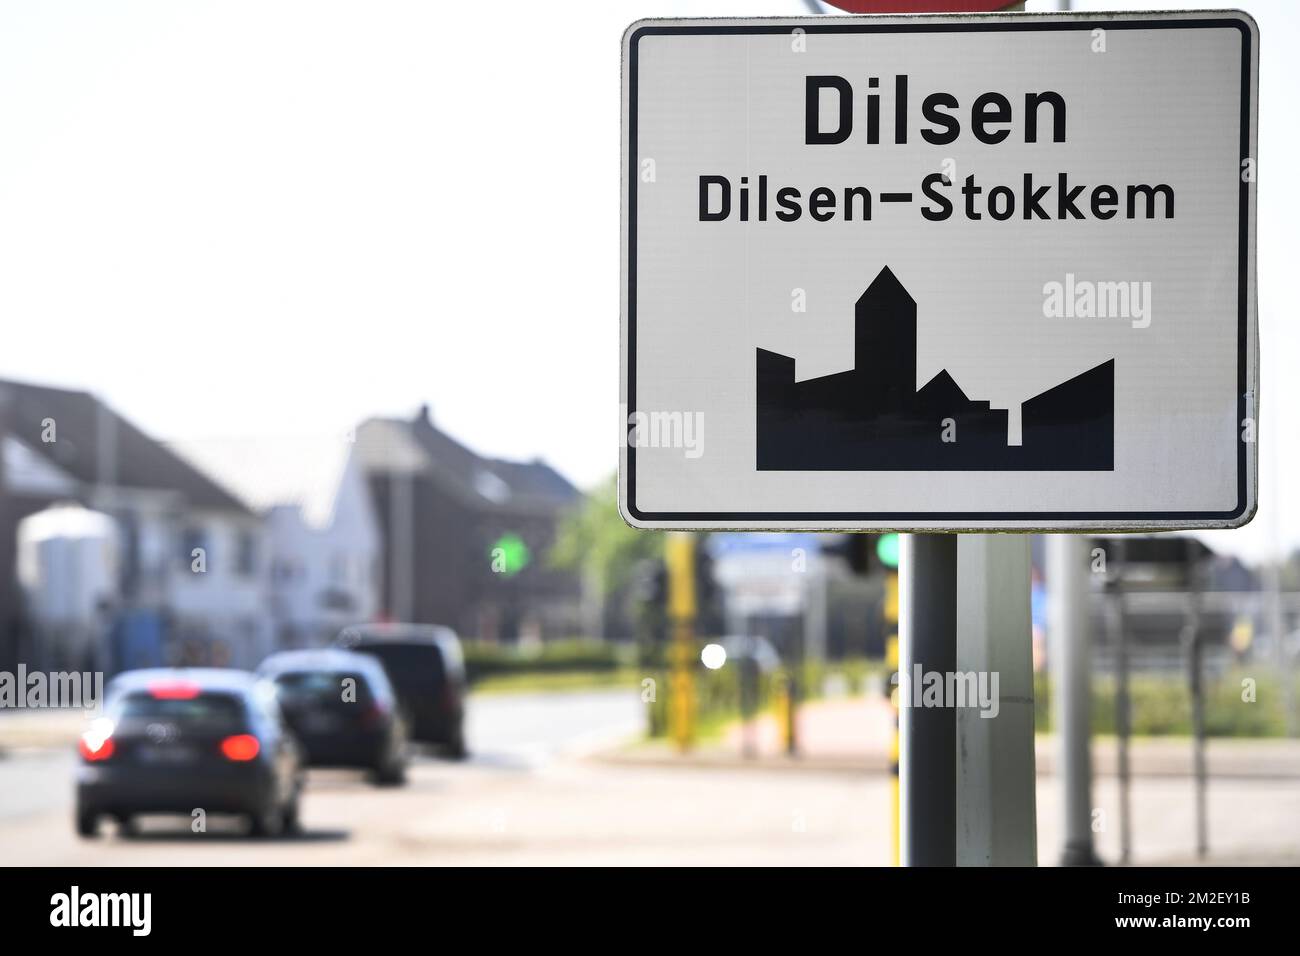 Abbildung zeigt den Namen der Gemeinde Dilsen-Stokkem auf einem Straßenschild, Freitag, 04. Mai 2018. BELGA FOTO YORICK JANSENS Stockfoto